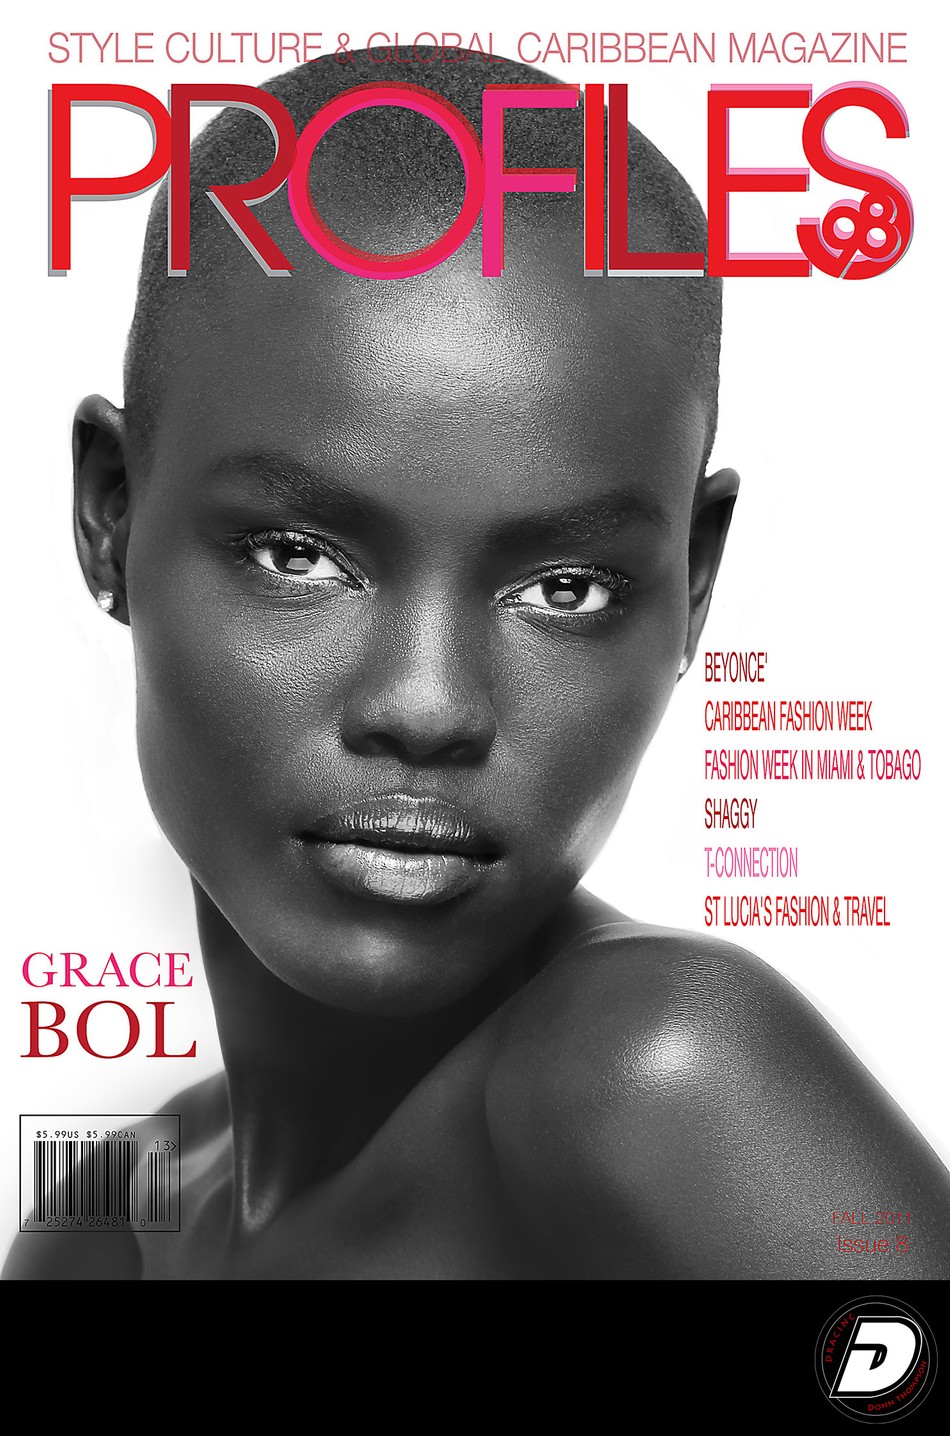 Bahamas Profiles98 Magazine Celebrity Photographer 